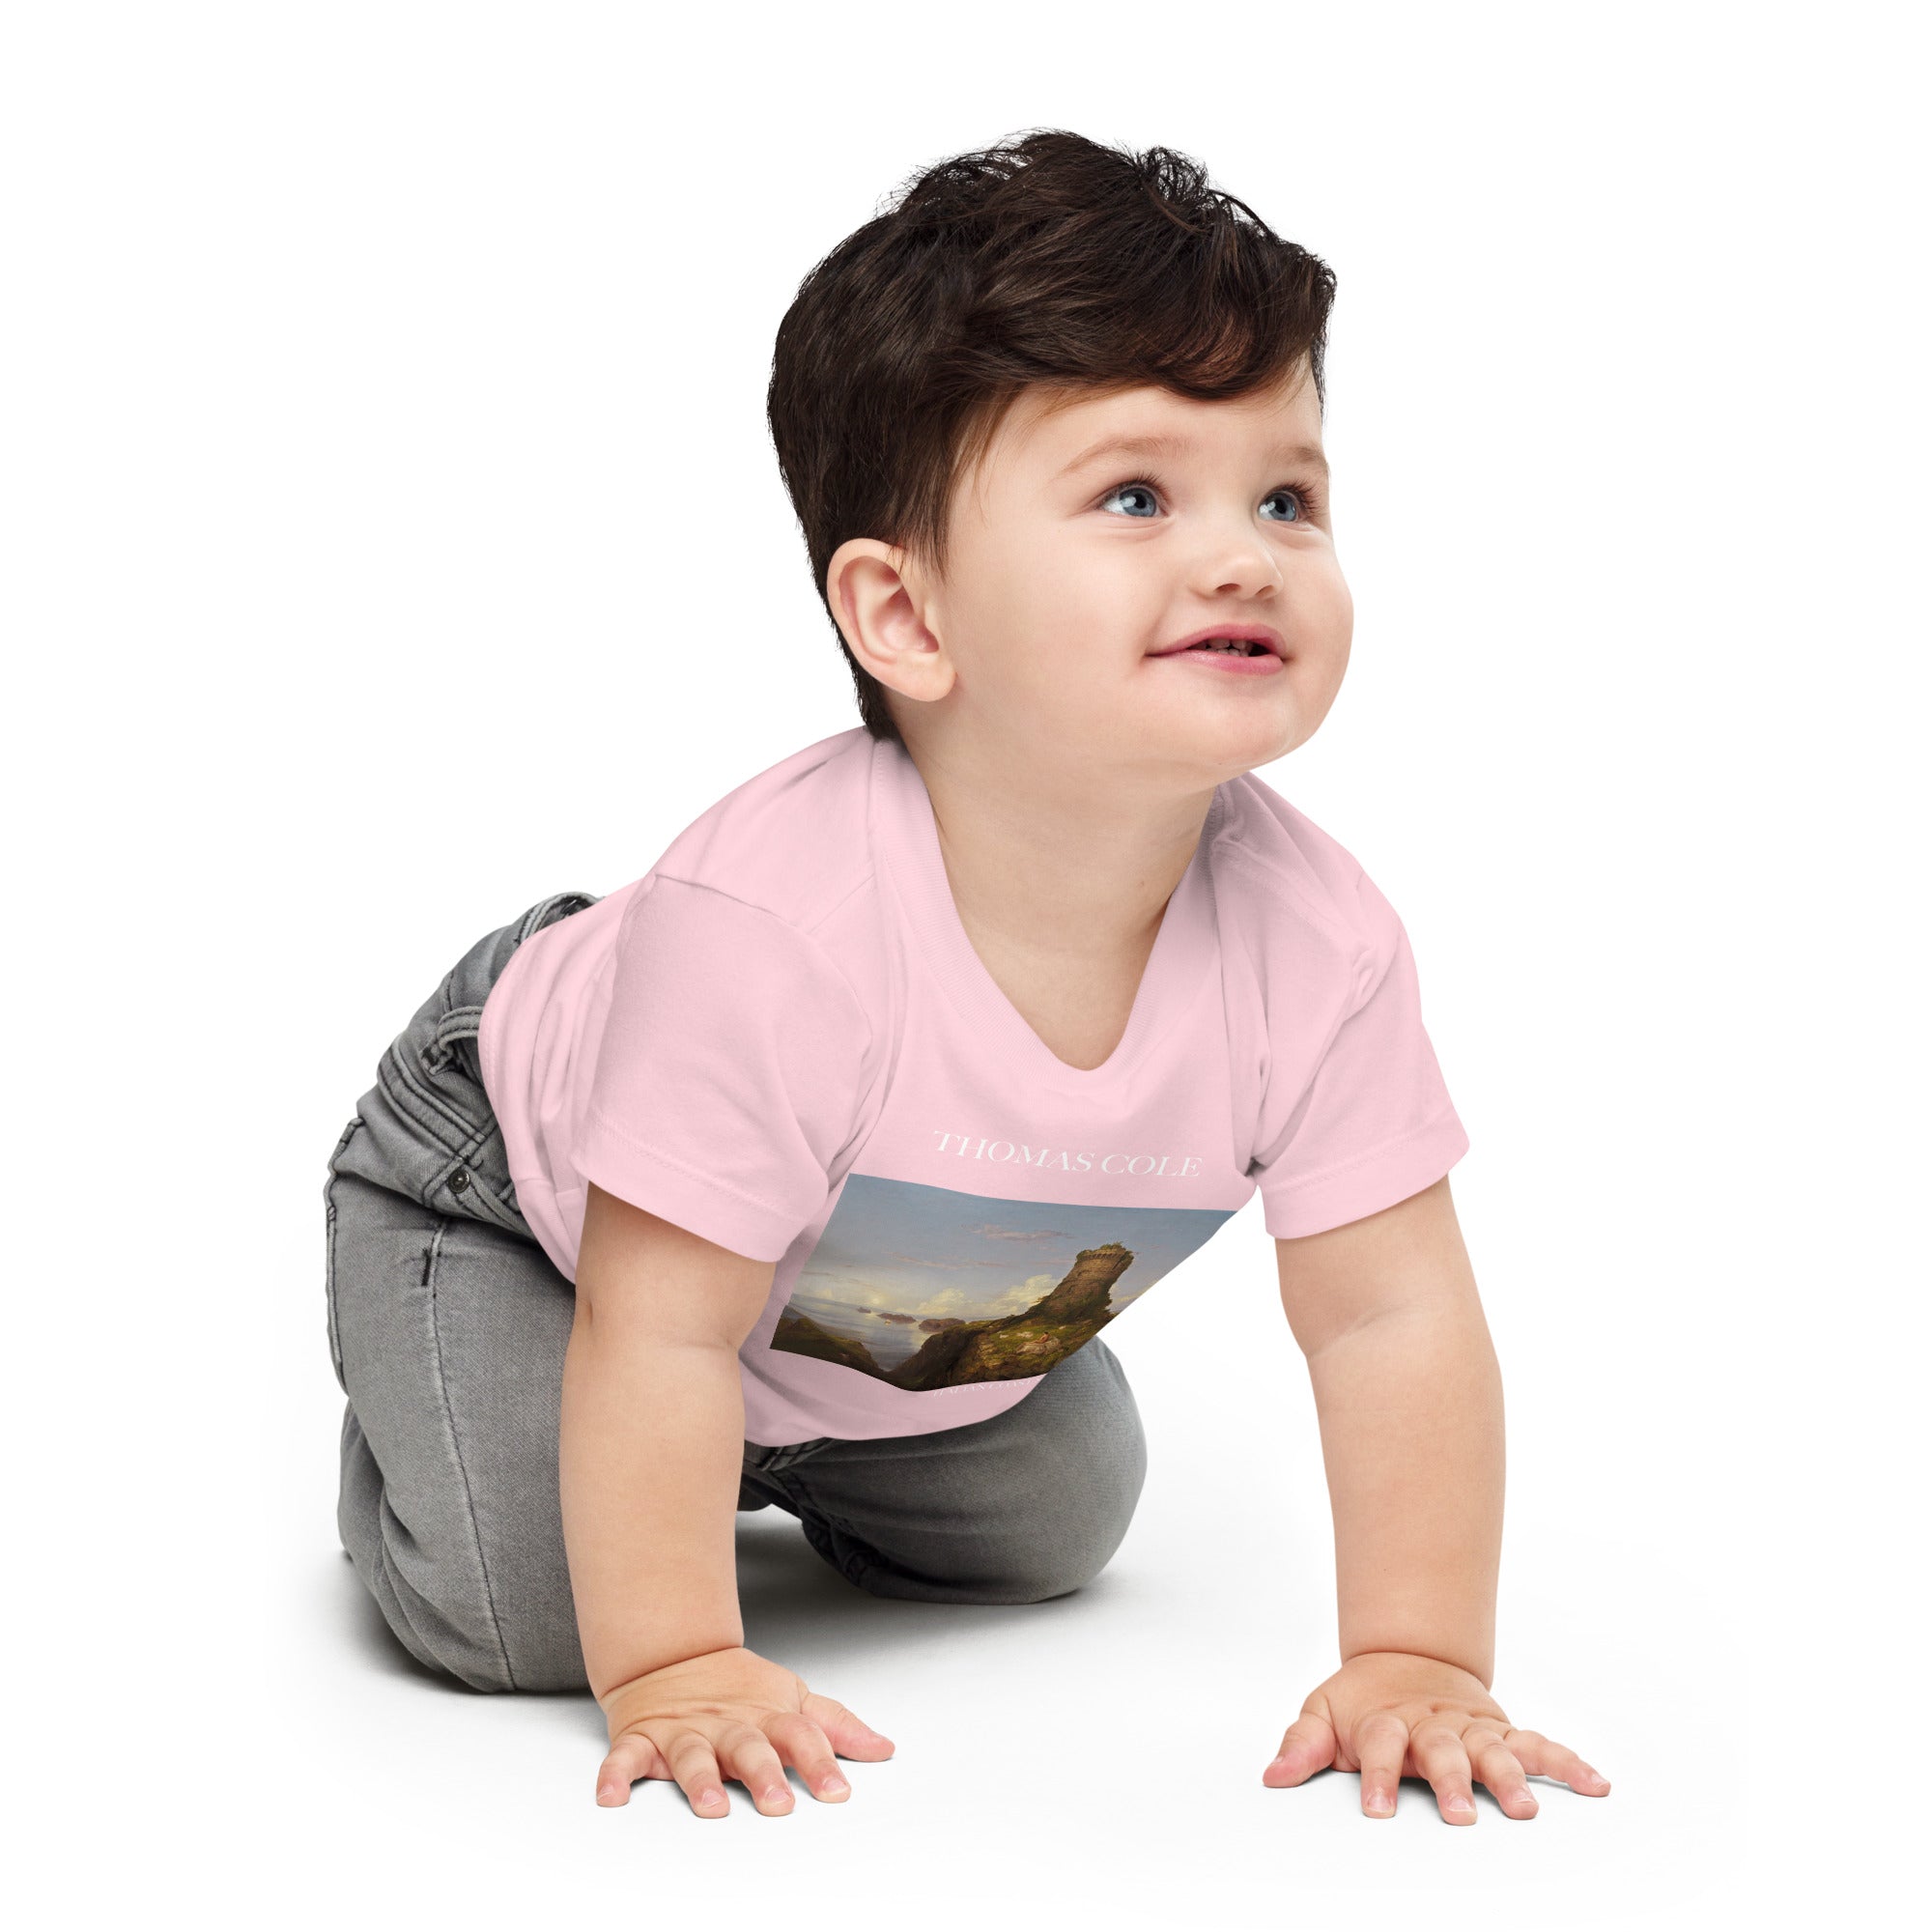 Thomas Cole „Italienische Küstenszene“, berühmtes Gemälde, Baby-T-Shirt, Premium-Kunst-T-Shirt für Babys